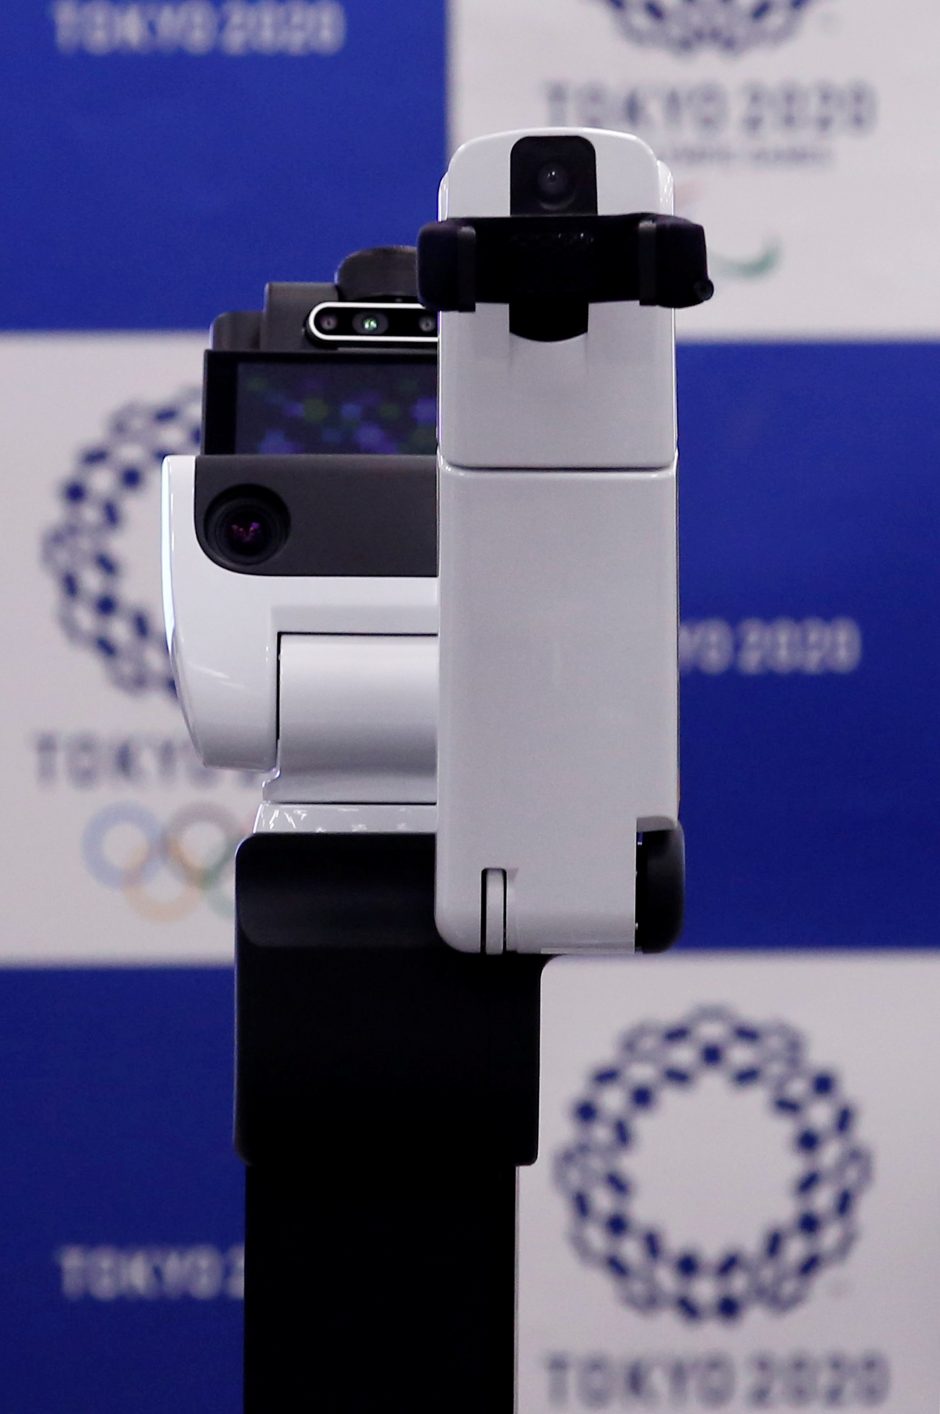 Tokijas pristatė robotus 2020-ųjų olimpiadai